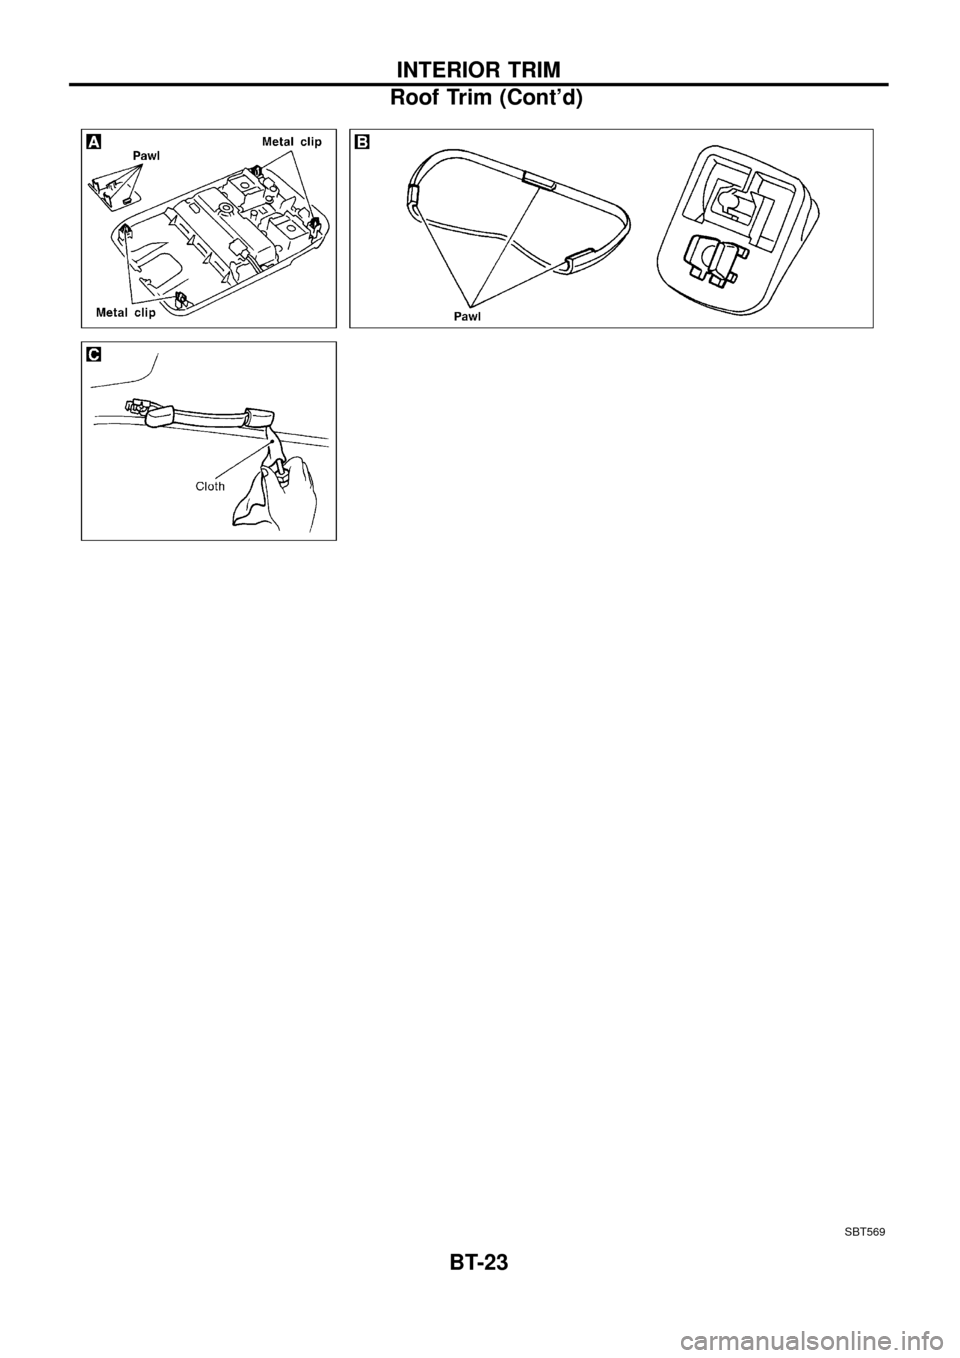 NISSAN PATROL 1998 Y61 / 5.G Body Workshop Manual SBT569
INTERIOR TRIM
Roof Trim (Contd)
BT-23 